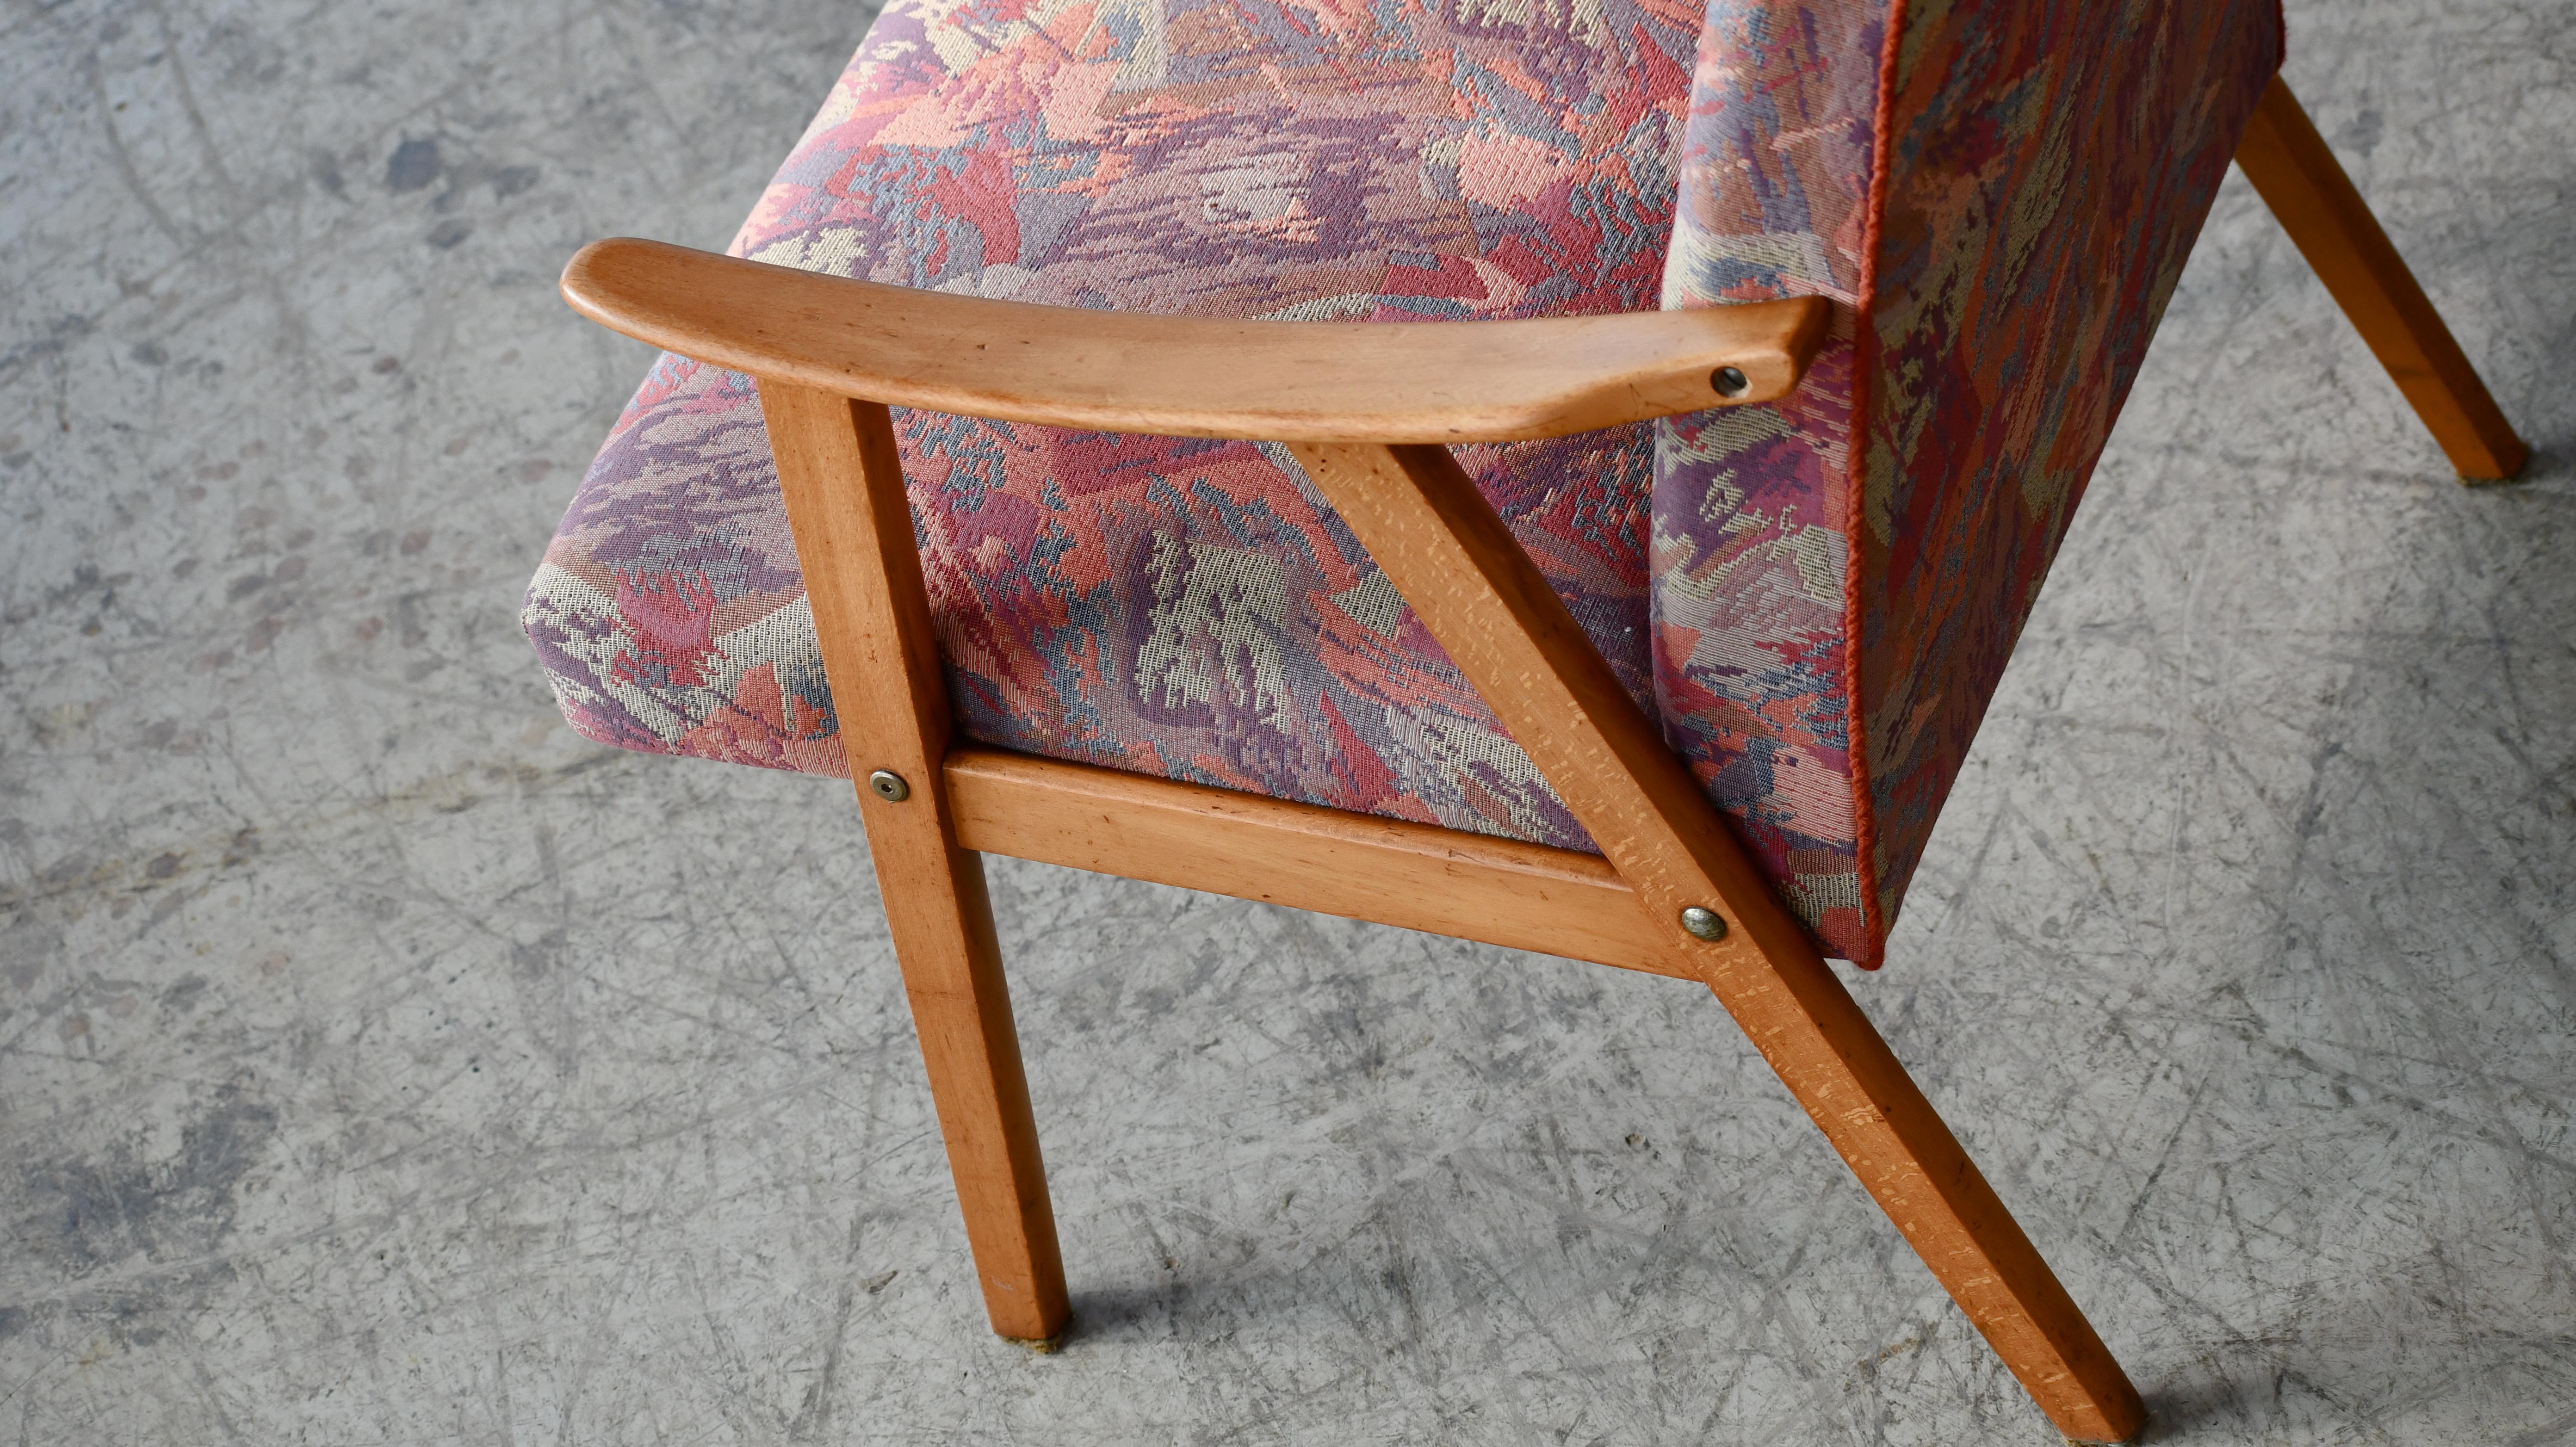 Schöne elegante dänische Stühle im einfachen Stil, wahrscheinlich aus den 1960er Jahren. Diese Stühle verkörpern den Stil, der zum berühmten dänischen Sessel des  60's. Die natürliche Buche  Das Holz entspricht genau dem, was derzeit in der Mode